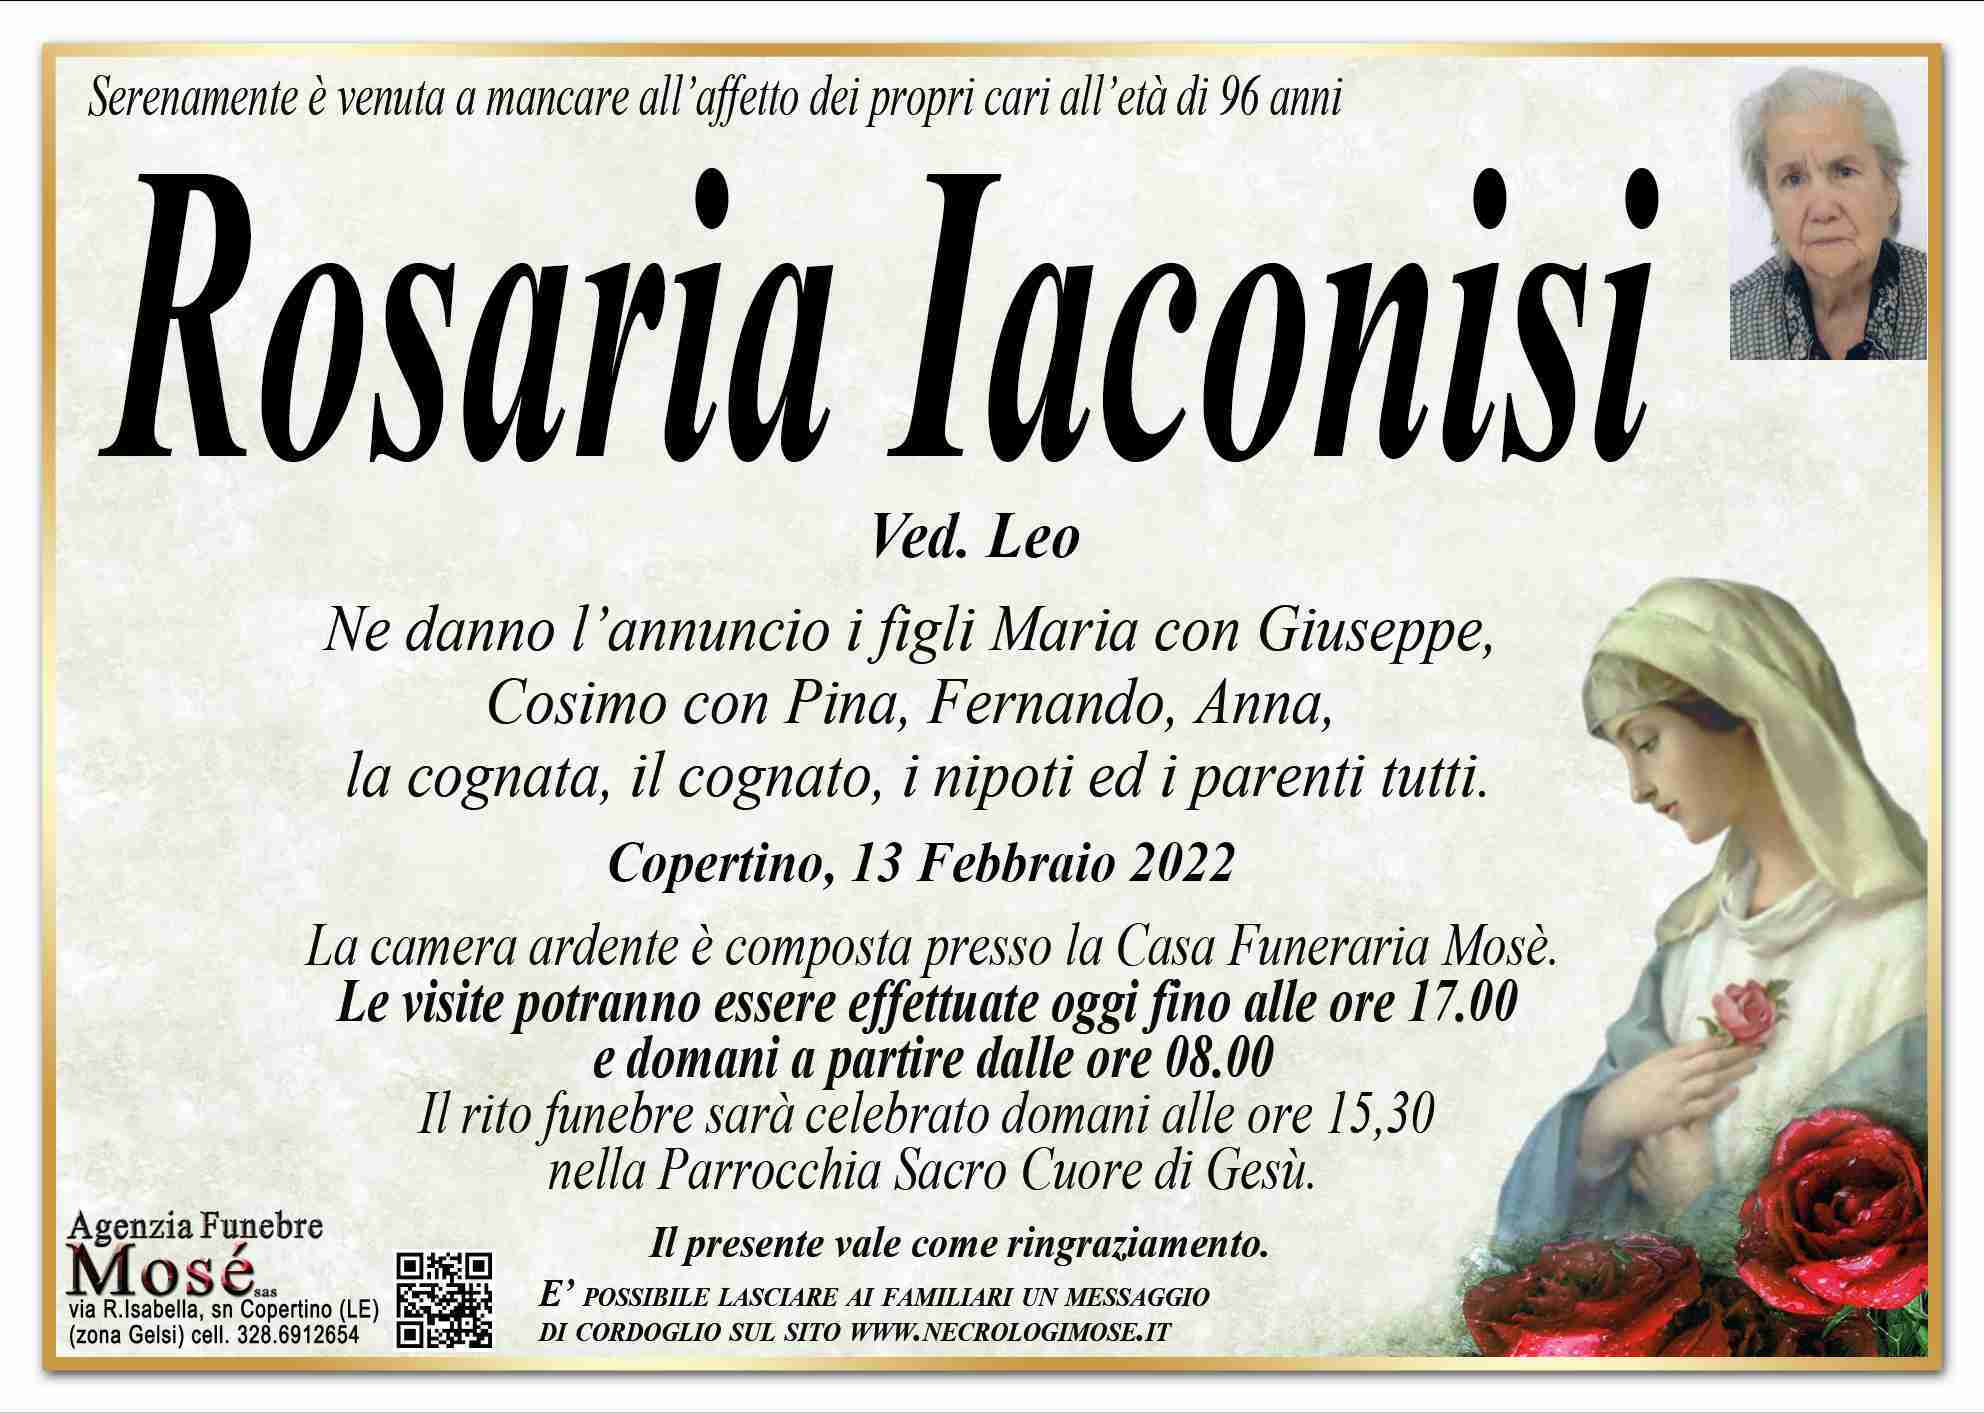 Rosaria Iaconisi